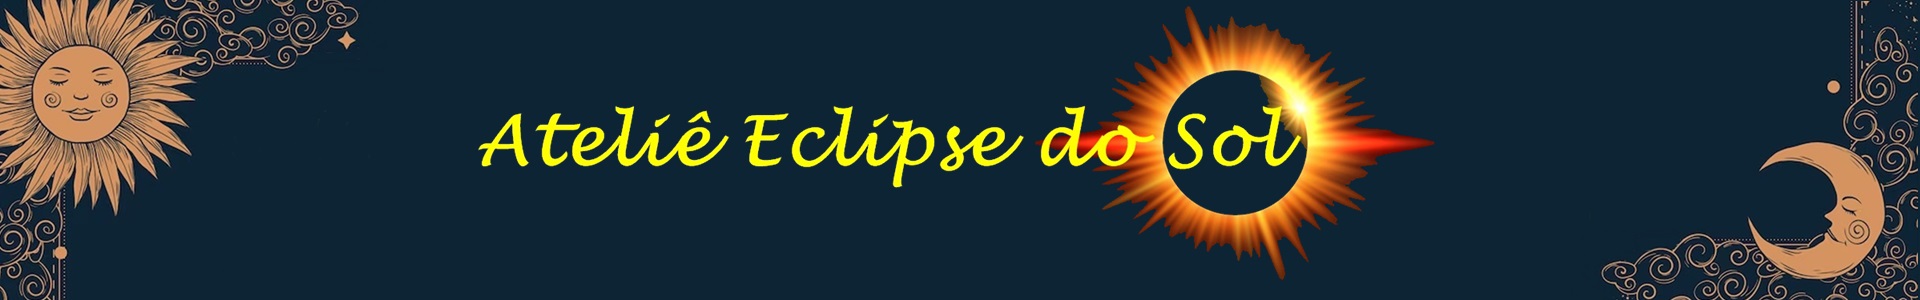 Ateliê Eclipse do Sol